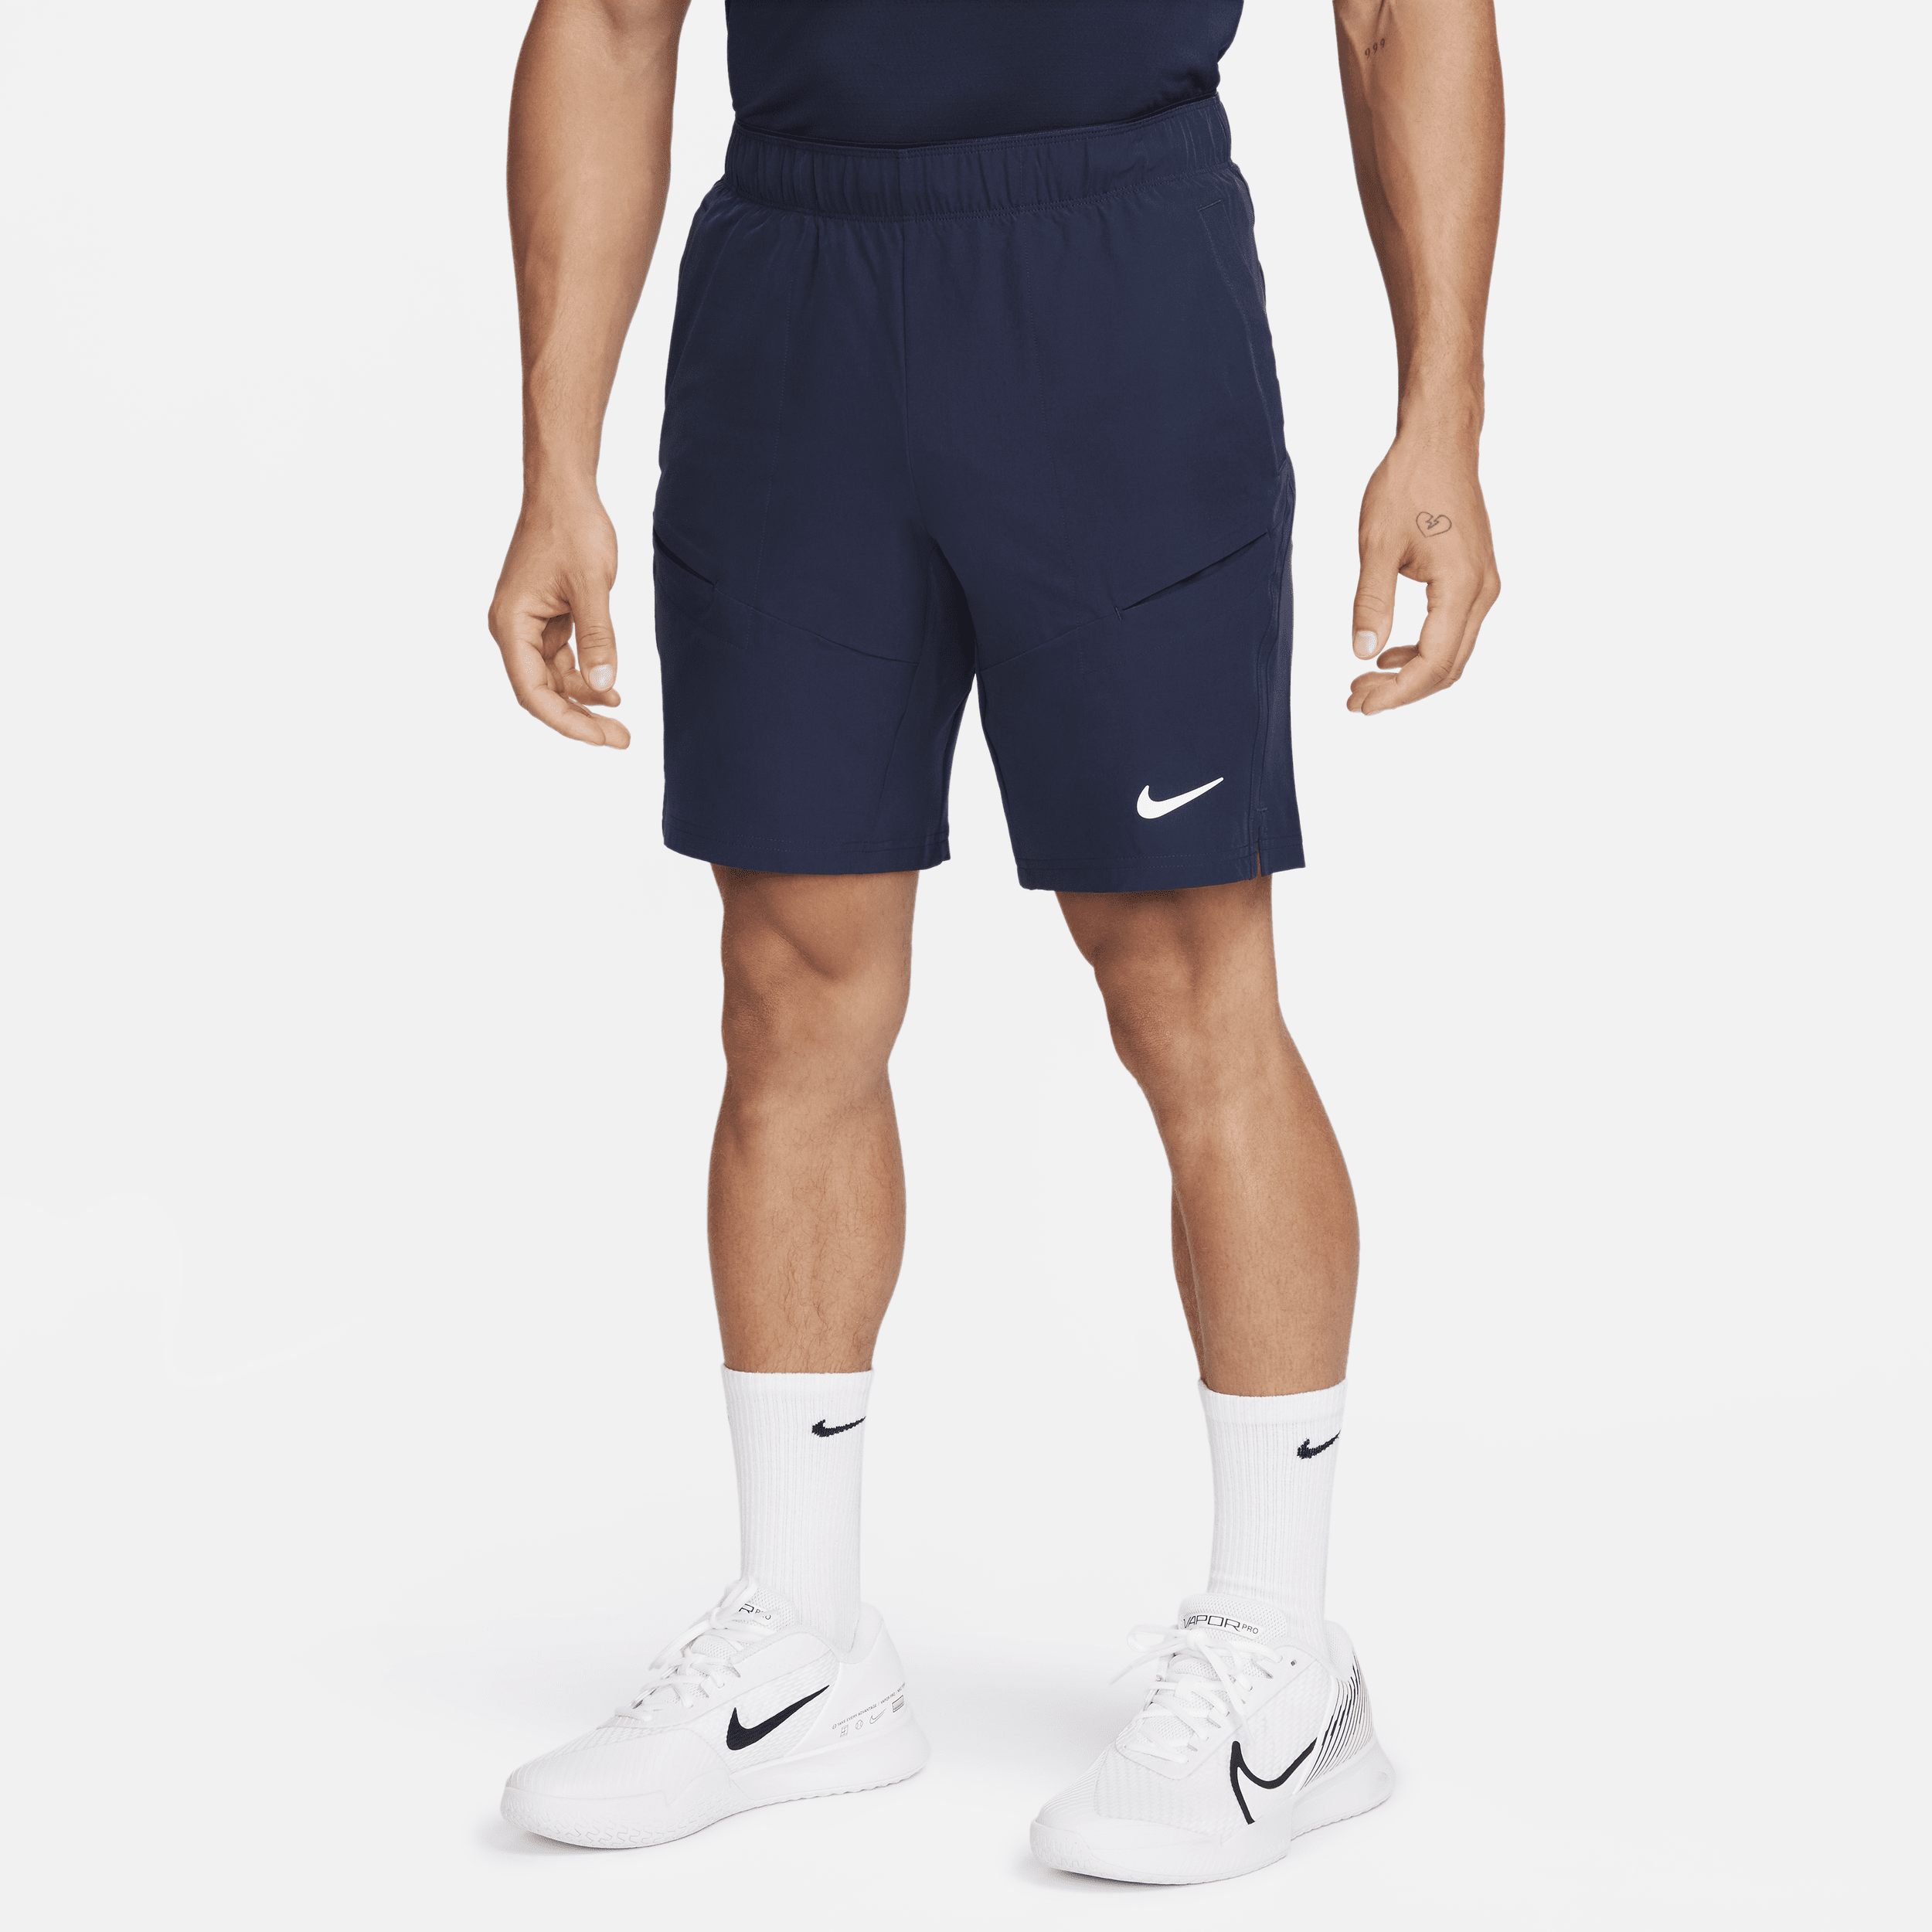 NikeCourt Advantage-tennisshorts (23 cm) til mænd - blå